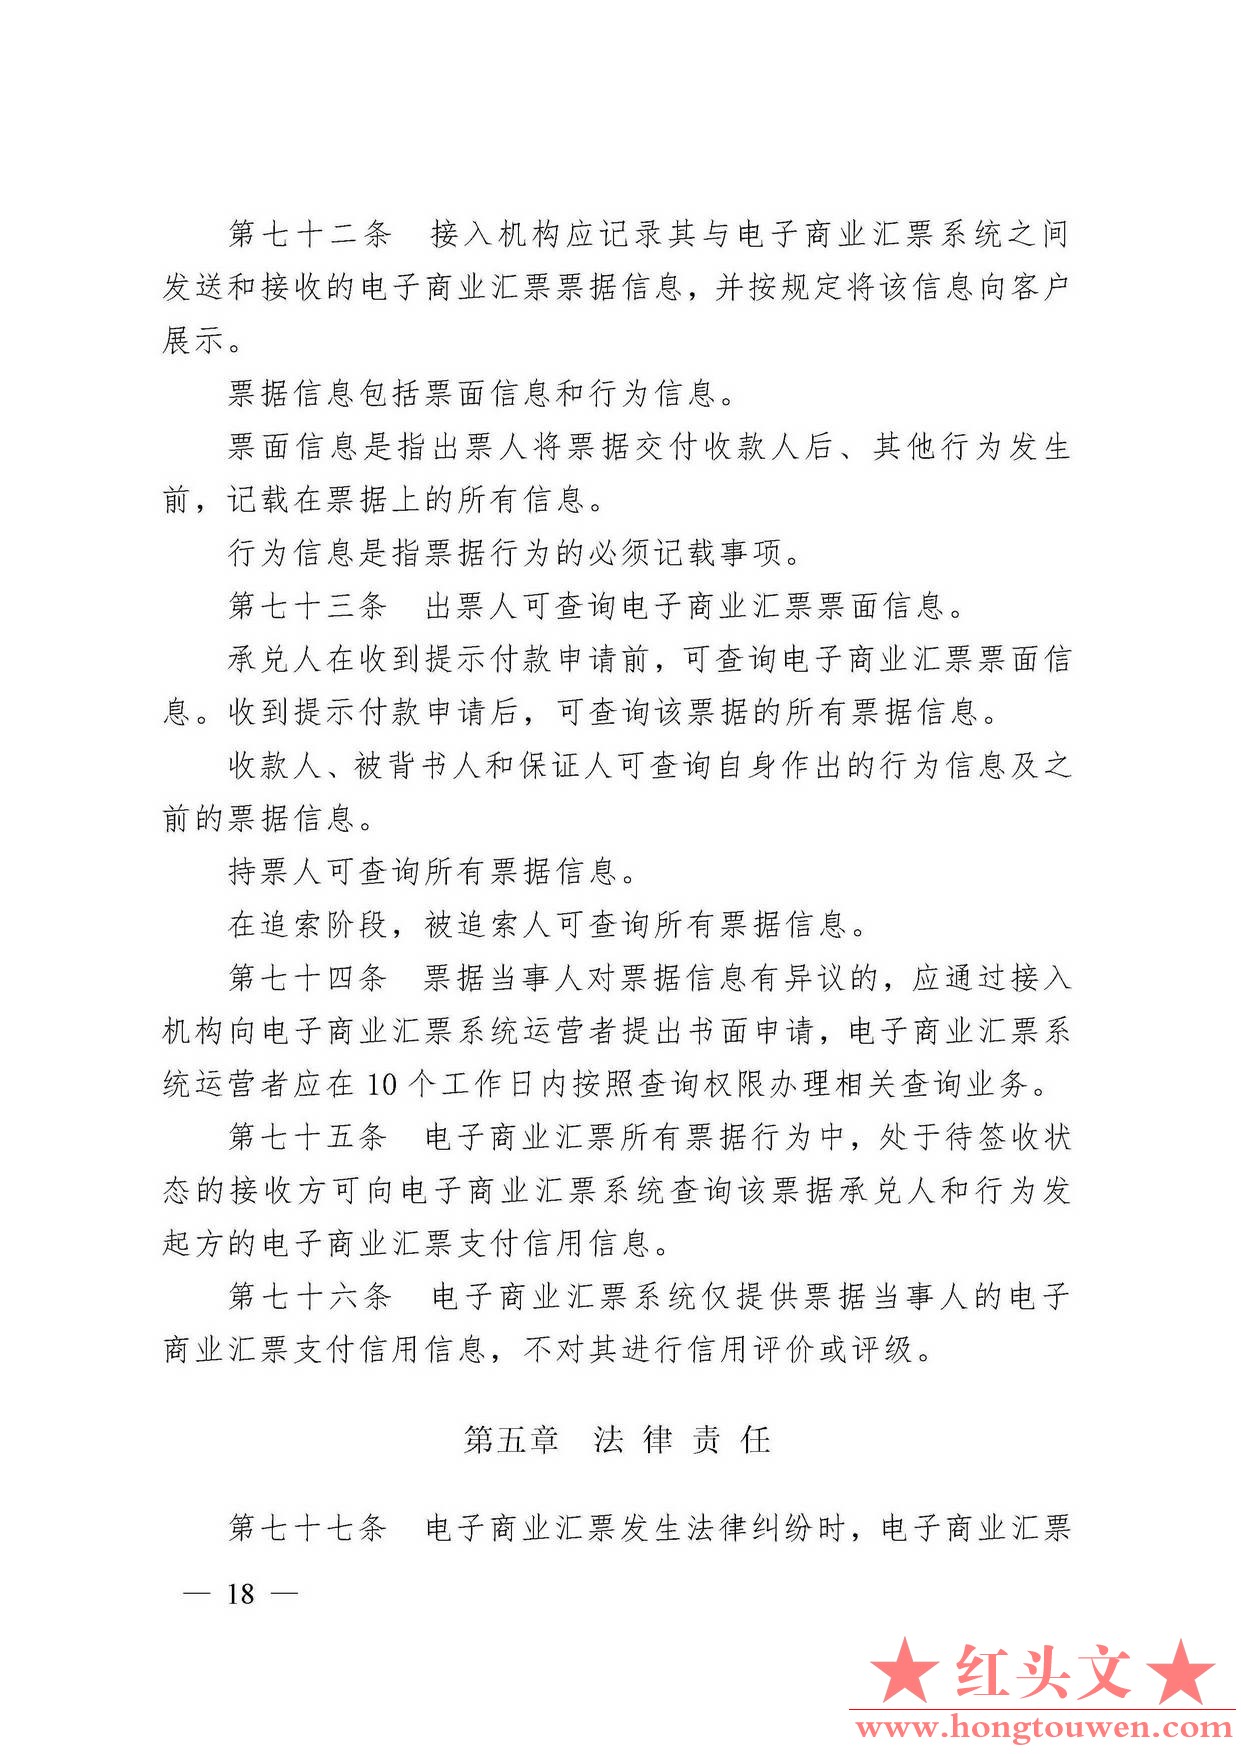 中国人民银行令[2009]2号-电子商业汇票管理办法_页面_18.jpg